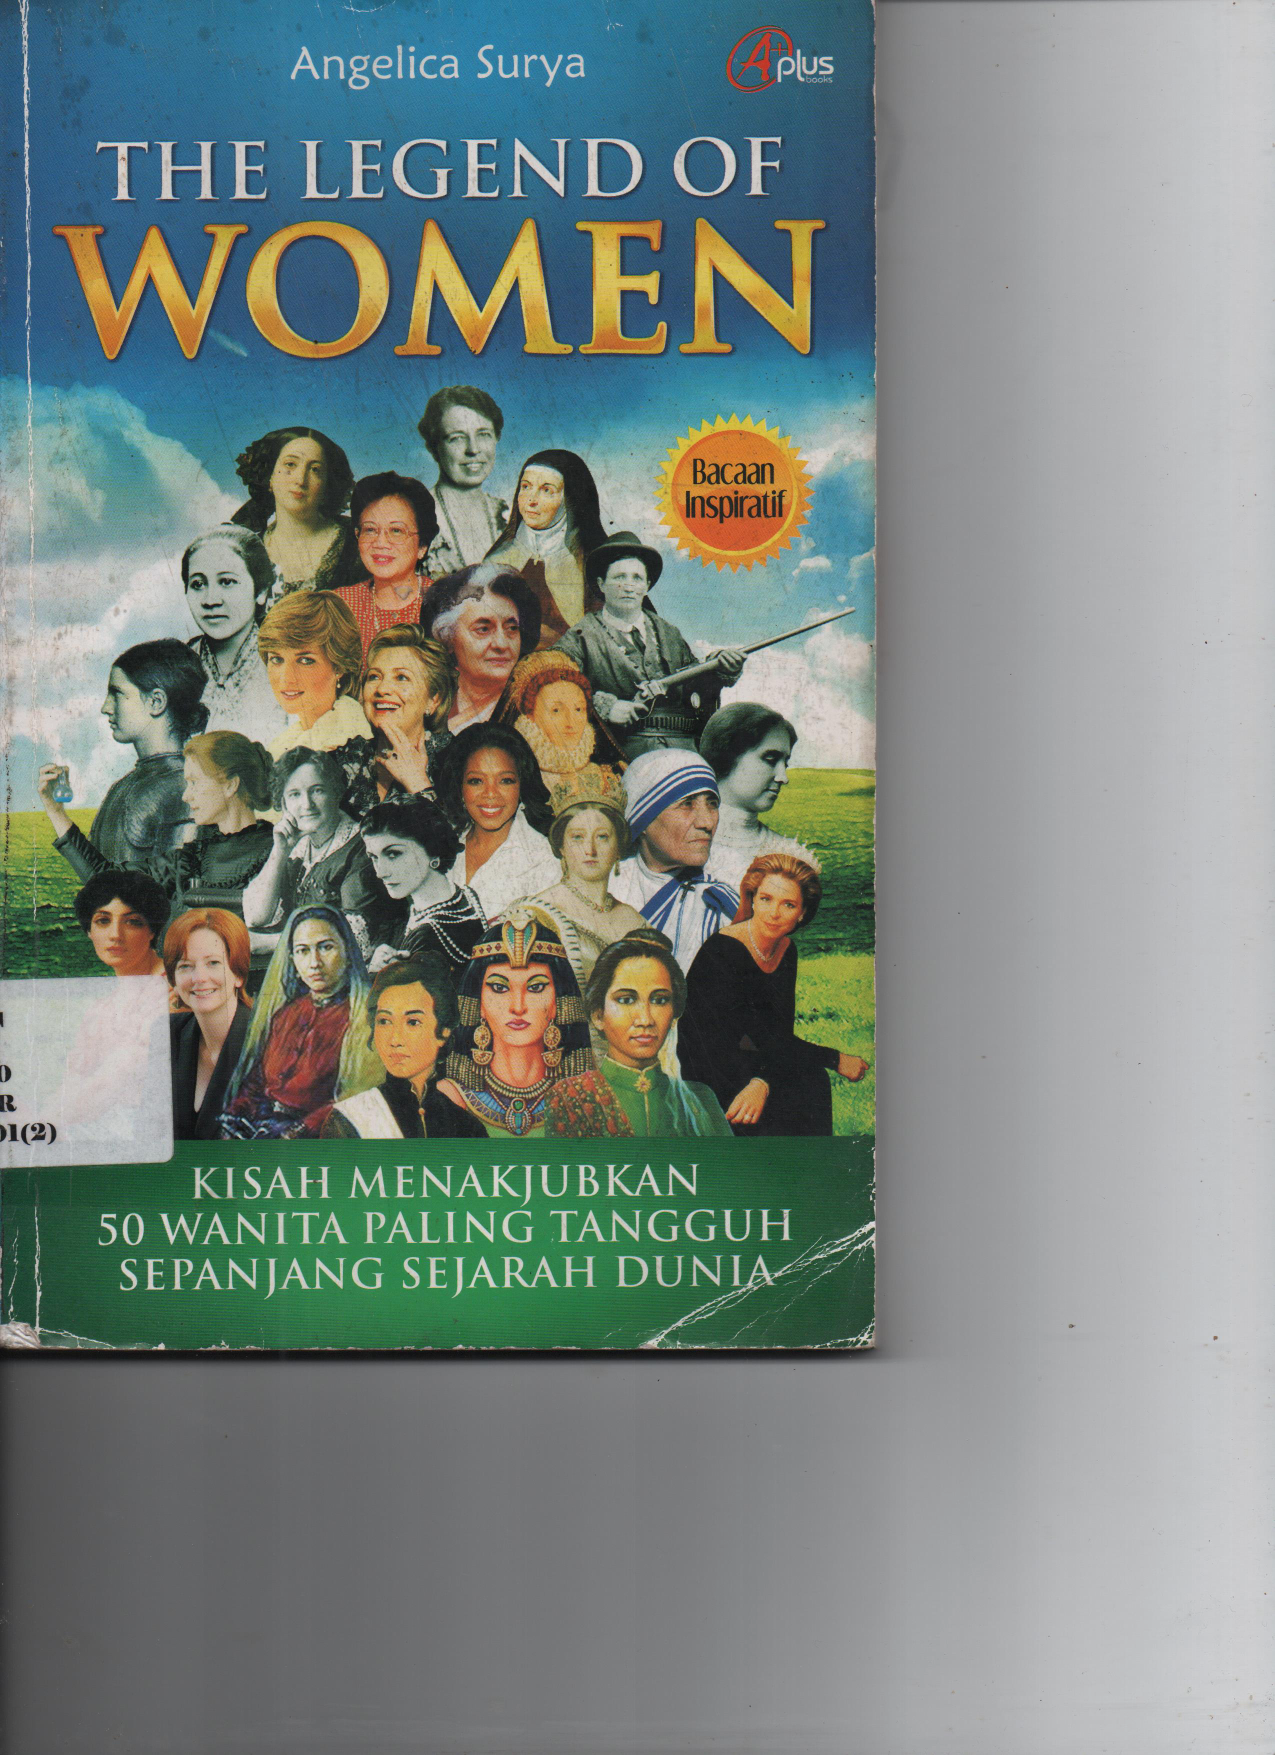 The Legend Of Women : Kisah Menakjubkan 50 Wanita Paling Tangguh Sepanjang Sejarah Dunia